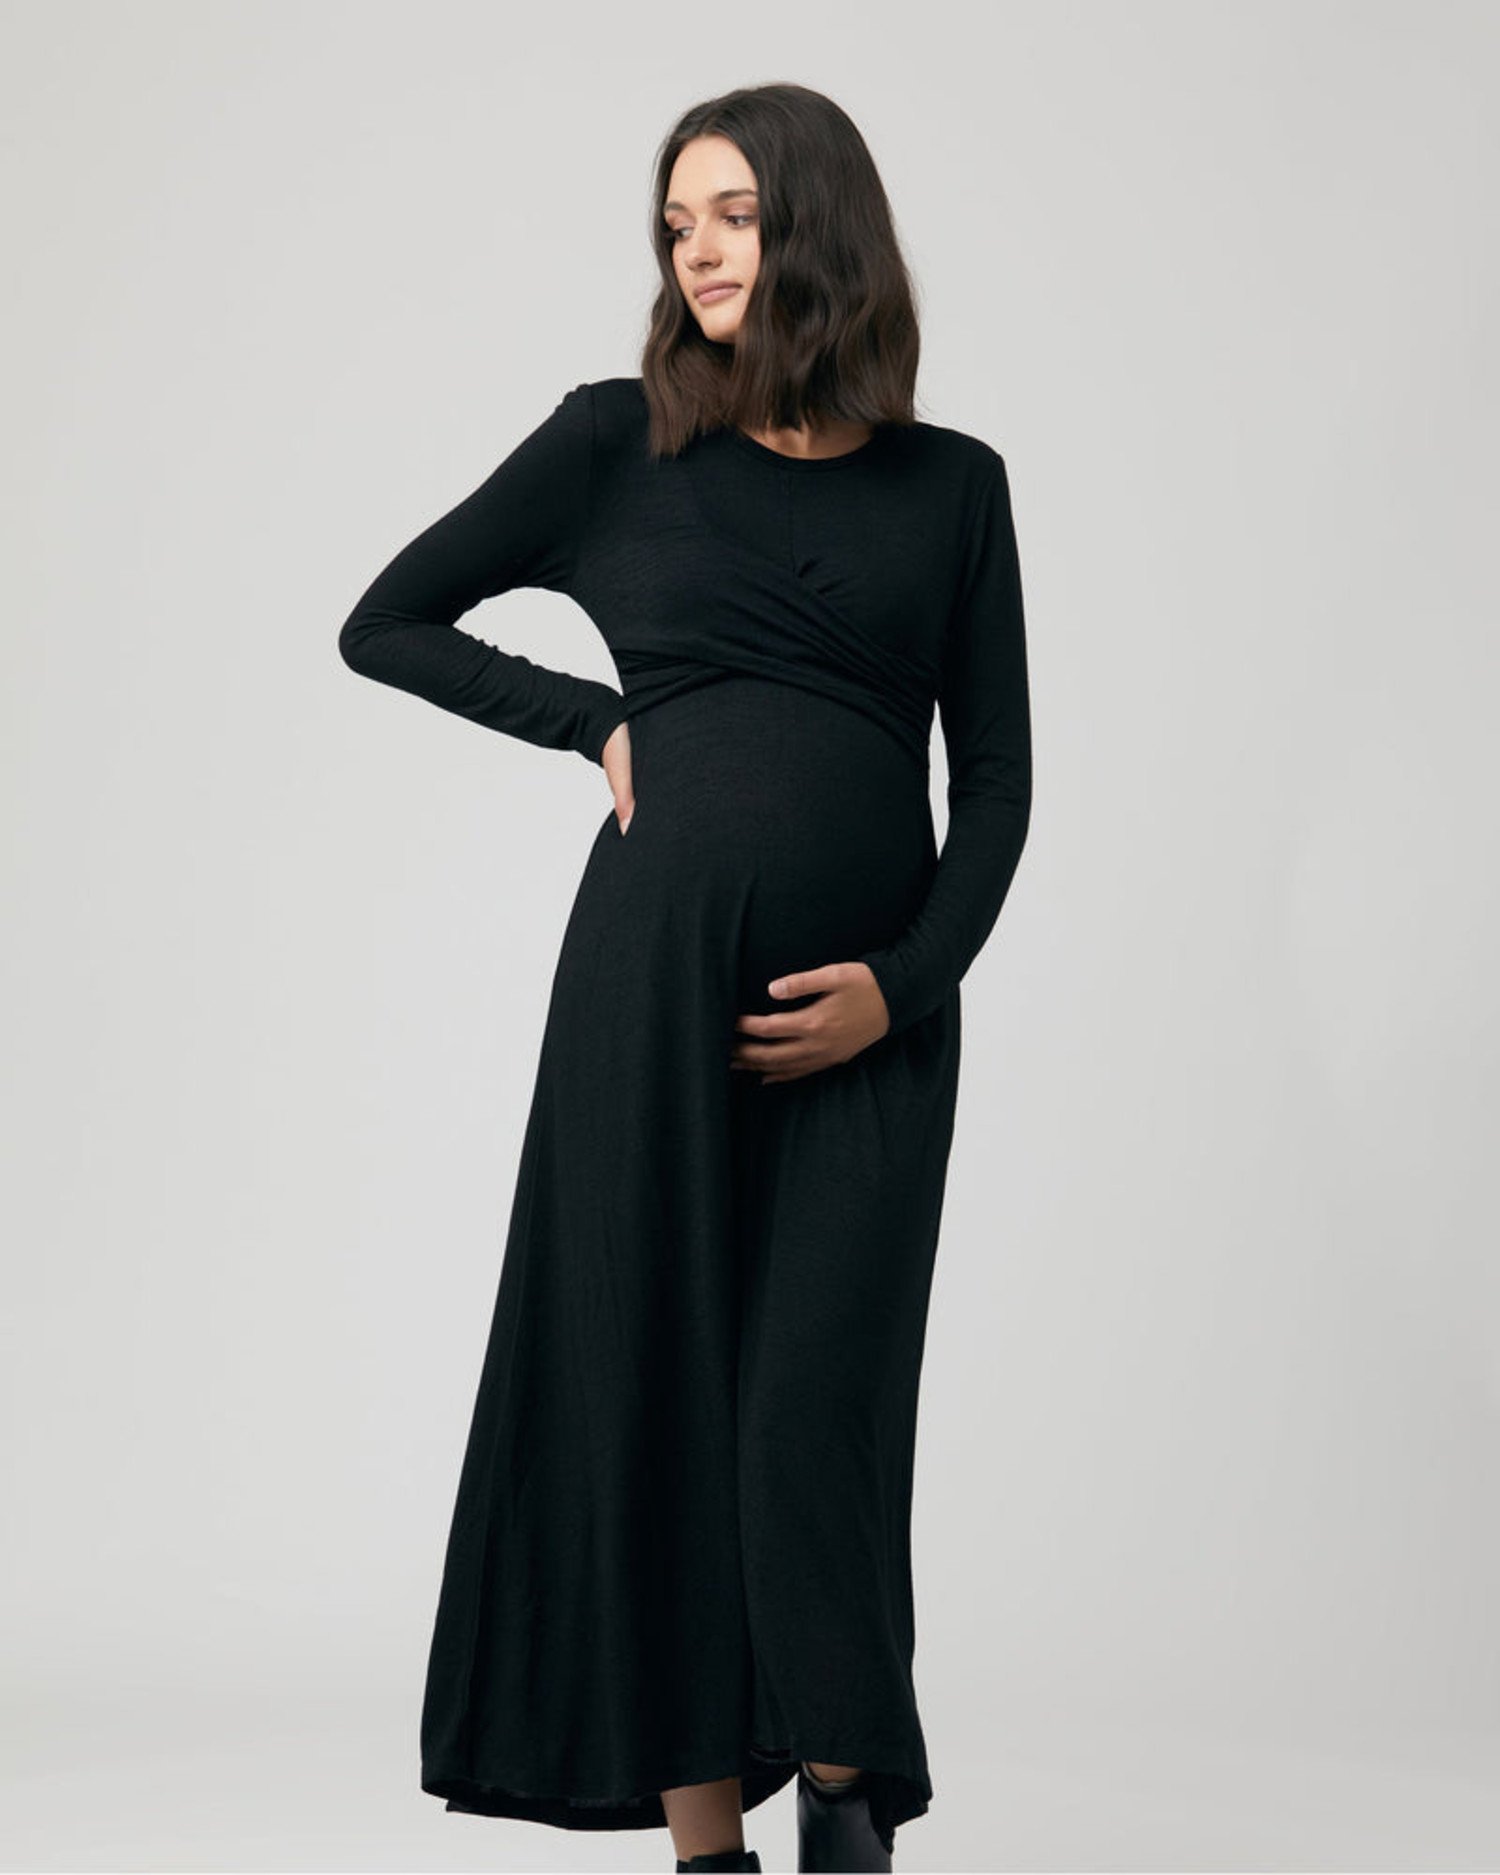 Robe Allaitement Ripe Maternité - Boutique L'Enfantillon